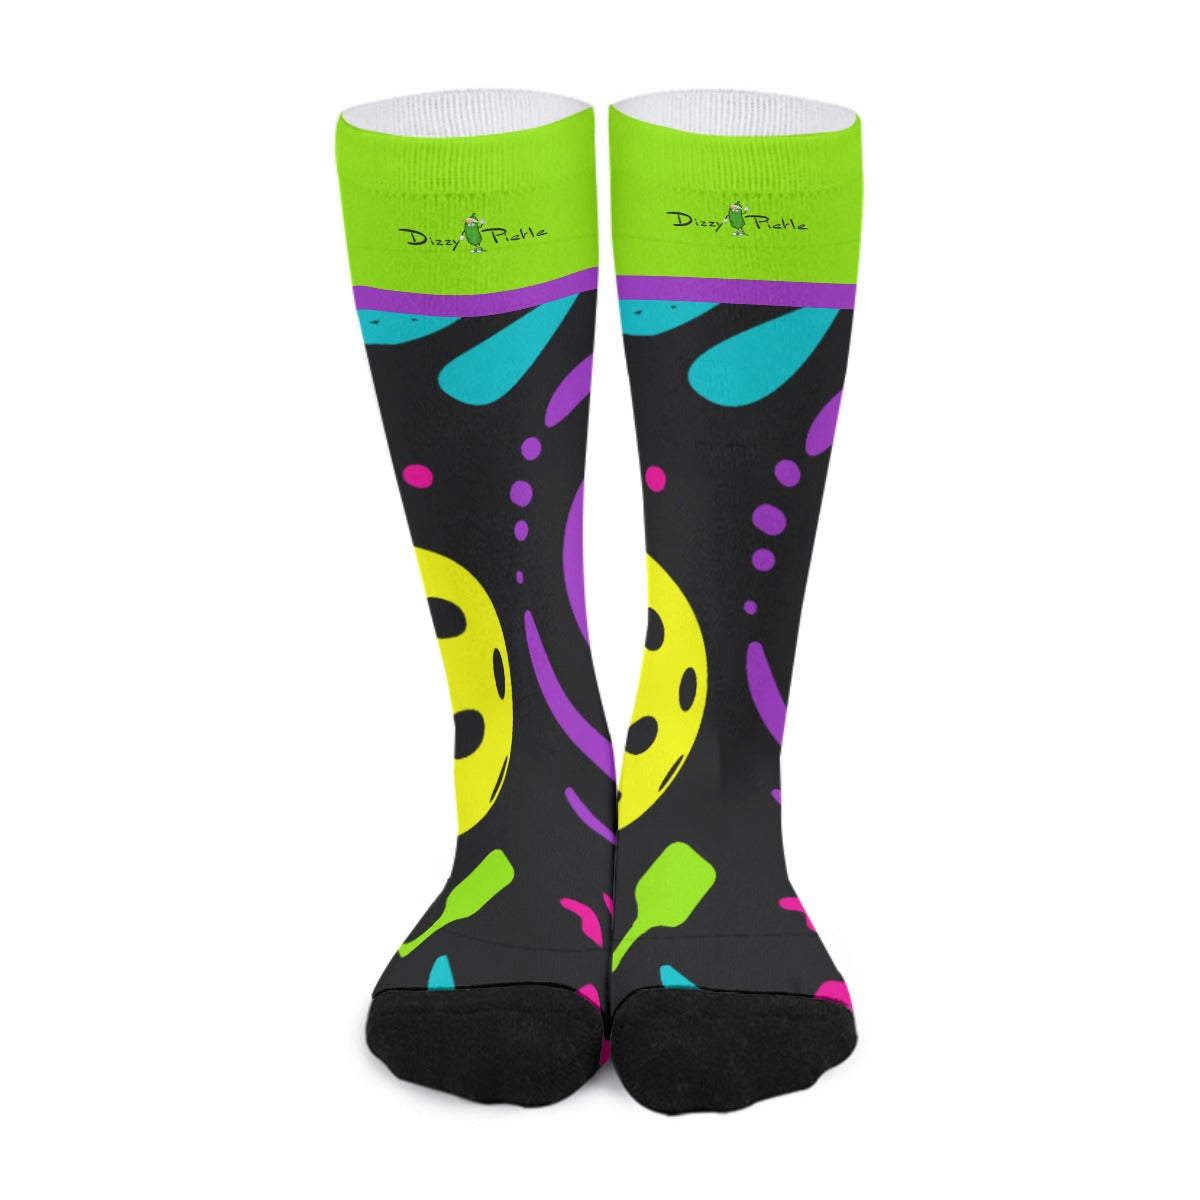 It's Swell - Black -  Pickleball Long Socks by Dizzy Pickle